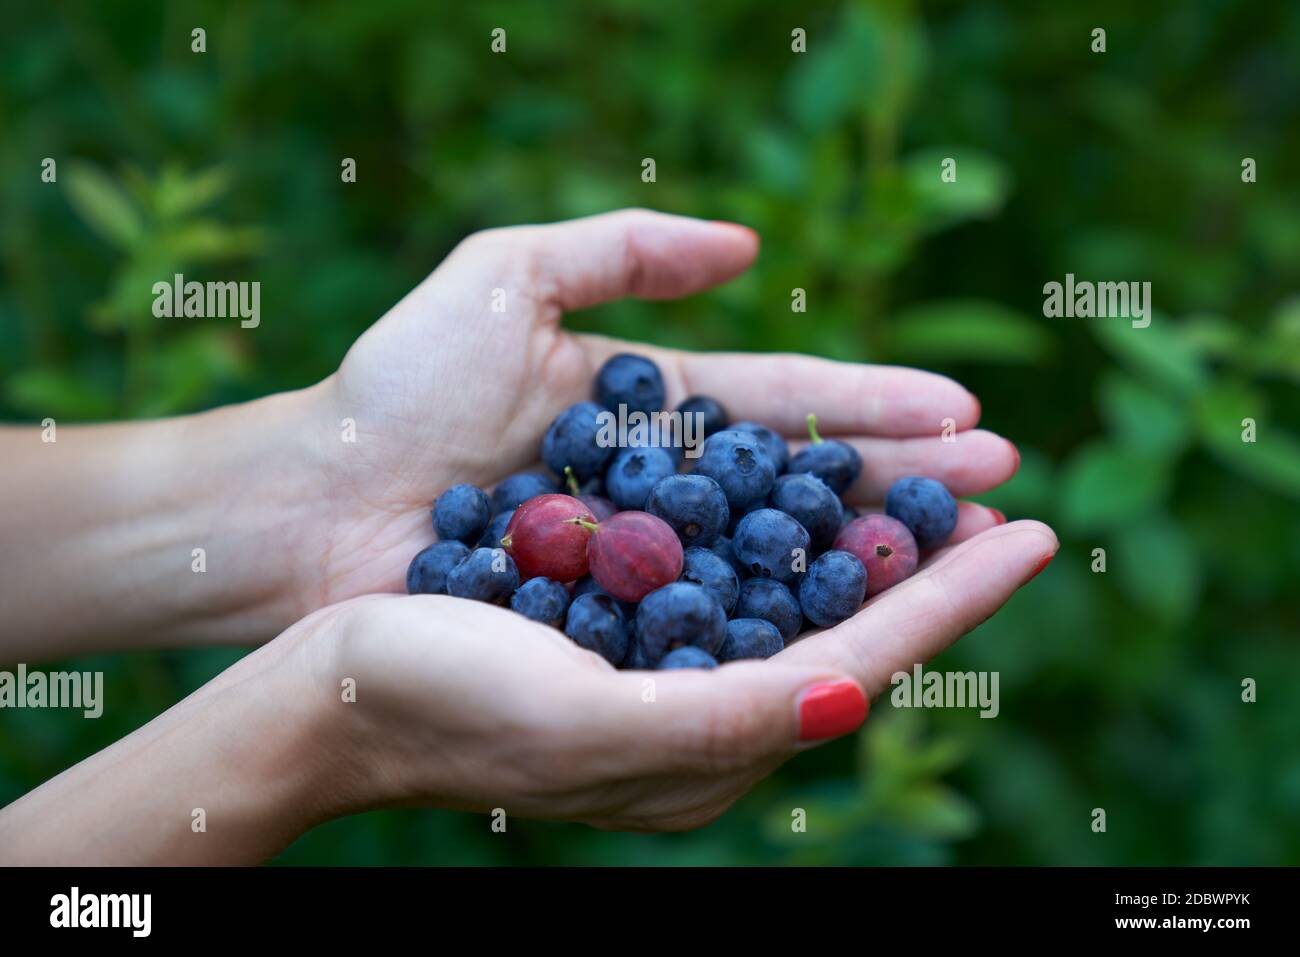 https://c8.alamy.com/comp/2DBWPYK/fresh-highbush-blueberries-and-gooseberries-on-female-hands-in-outdoors-settings-in-finland-2DBWPYK.jpg